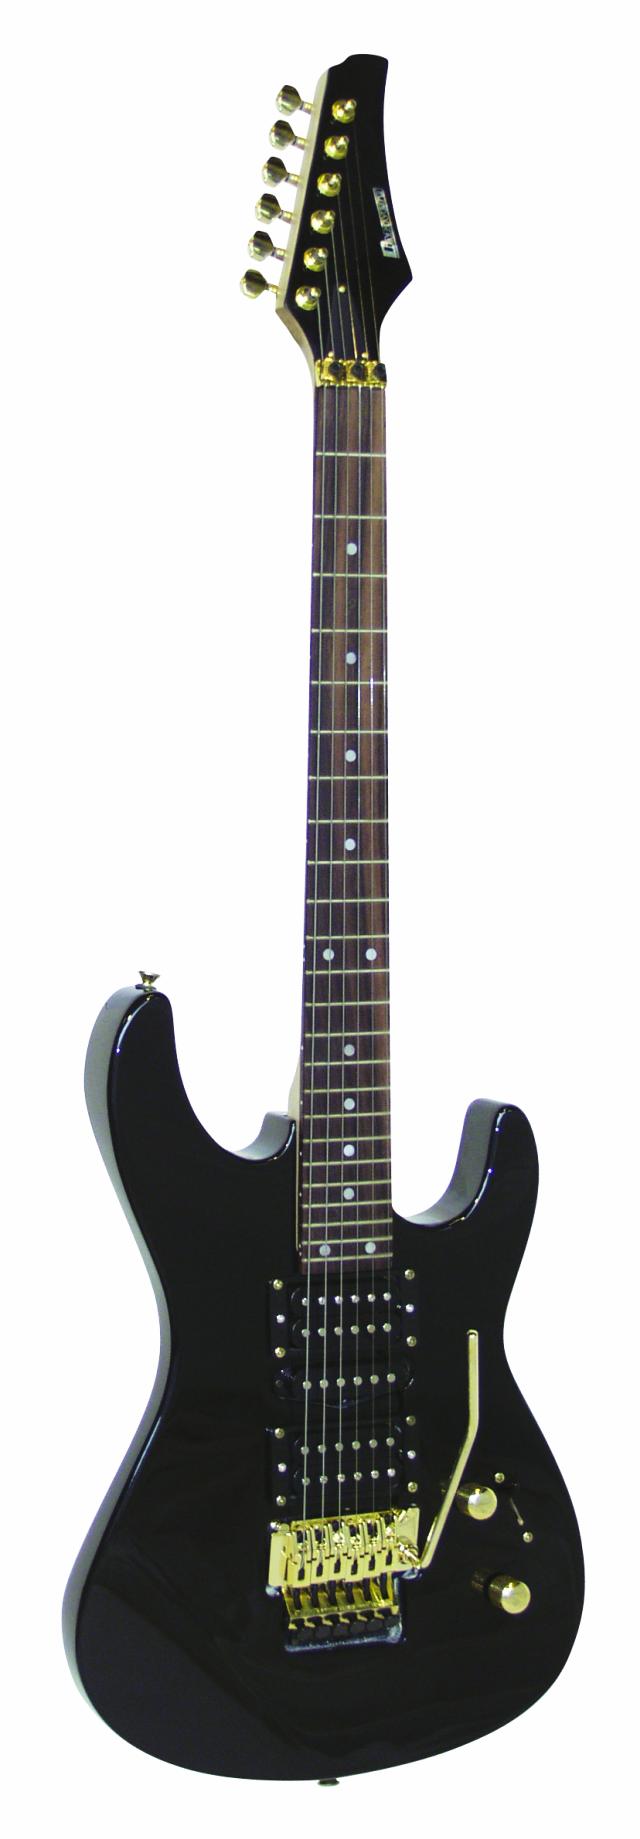 Dimavery elektrická kytara FR-321 , černý